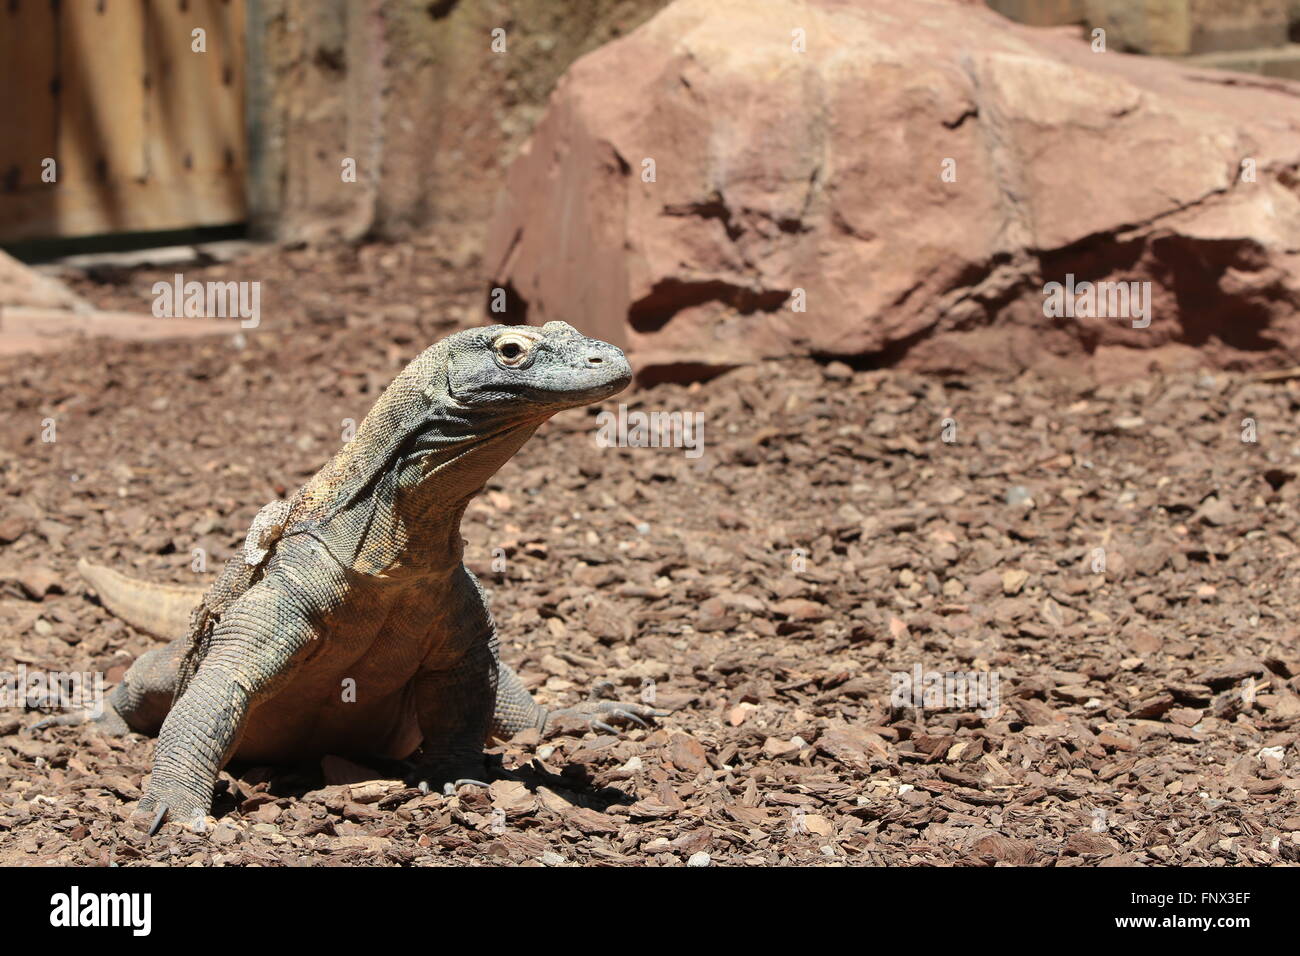 Komodo Dragon (Varanus komodoensis), side view Stock Photo